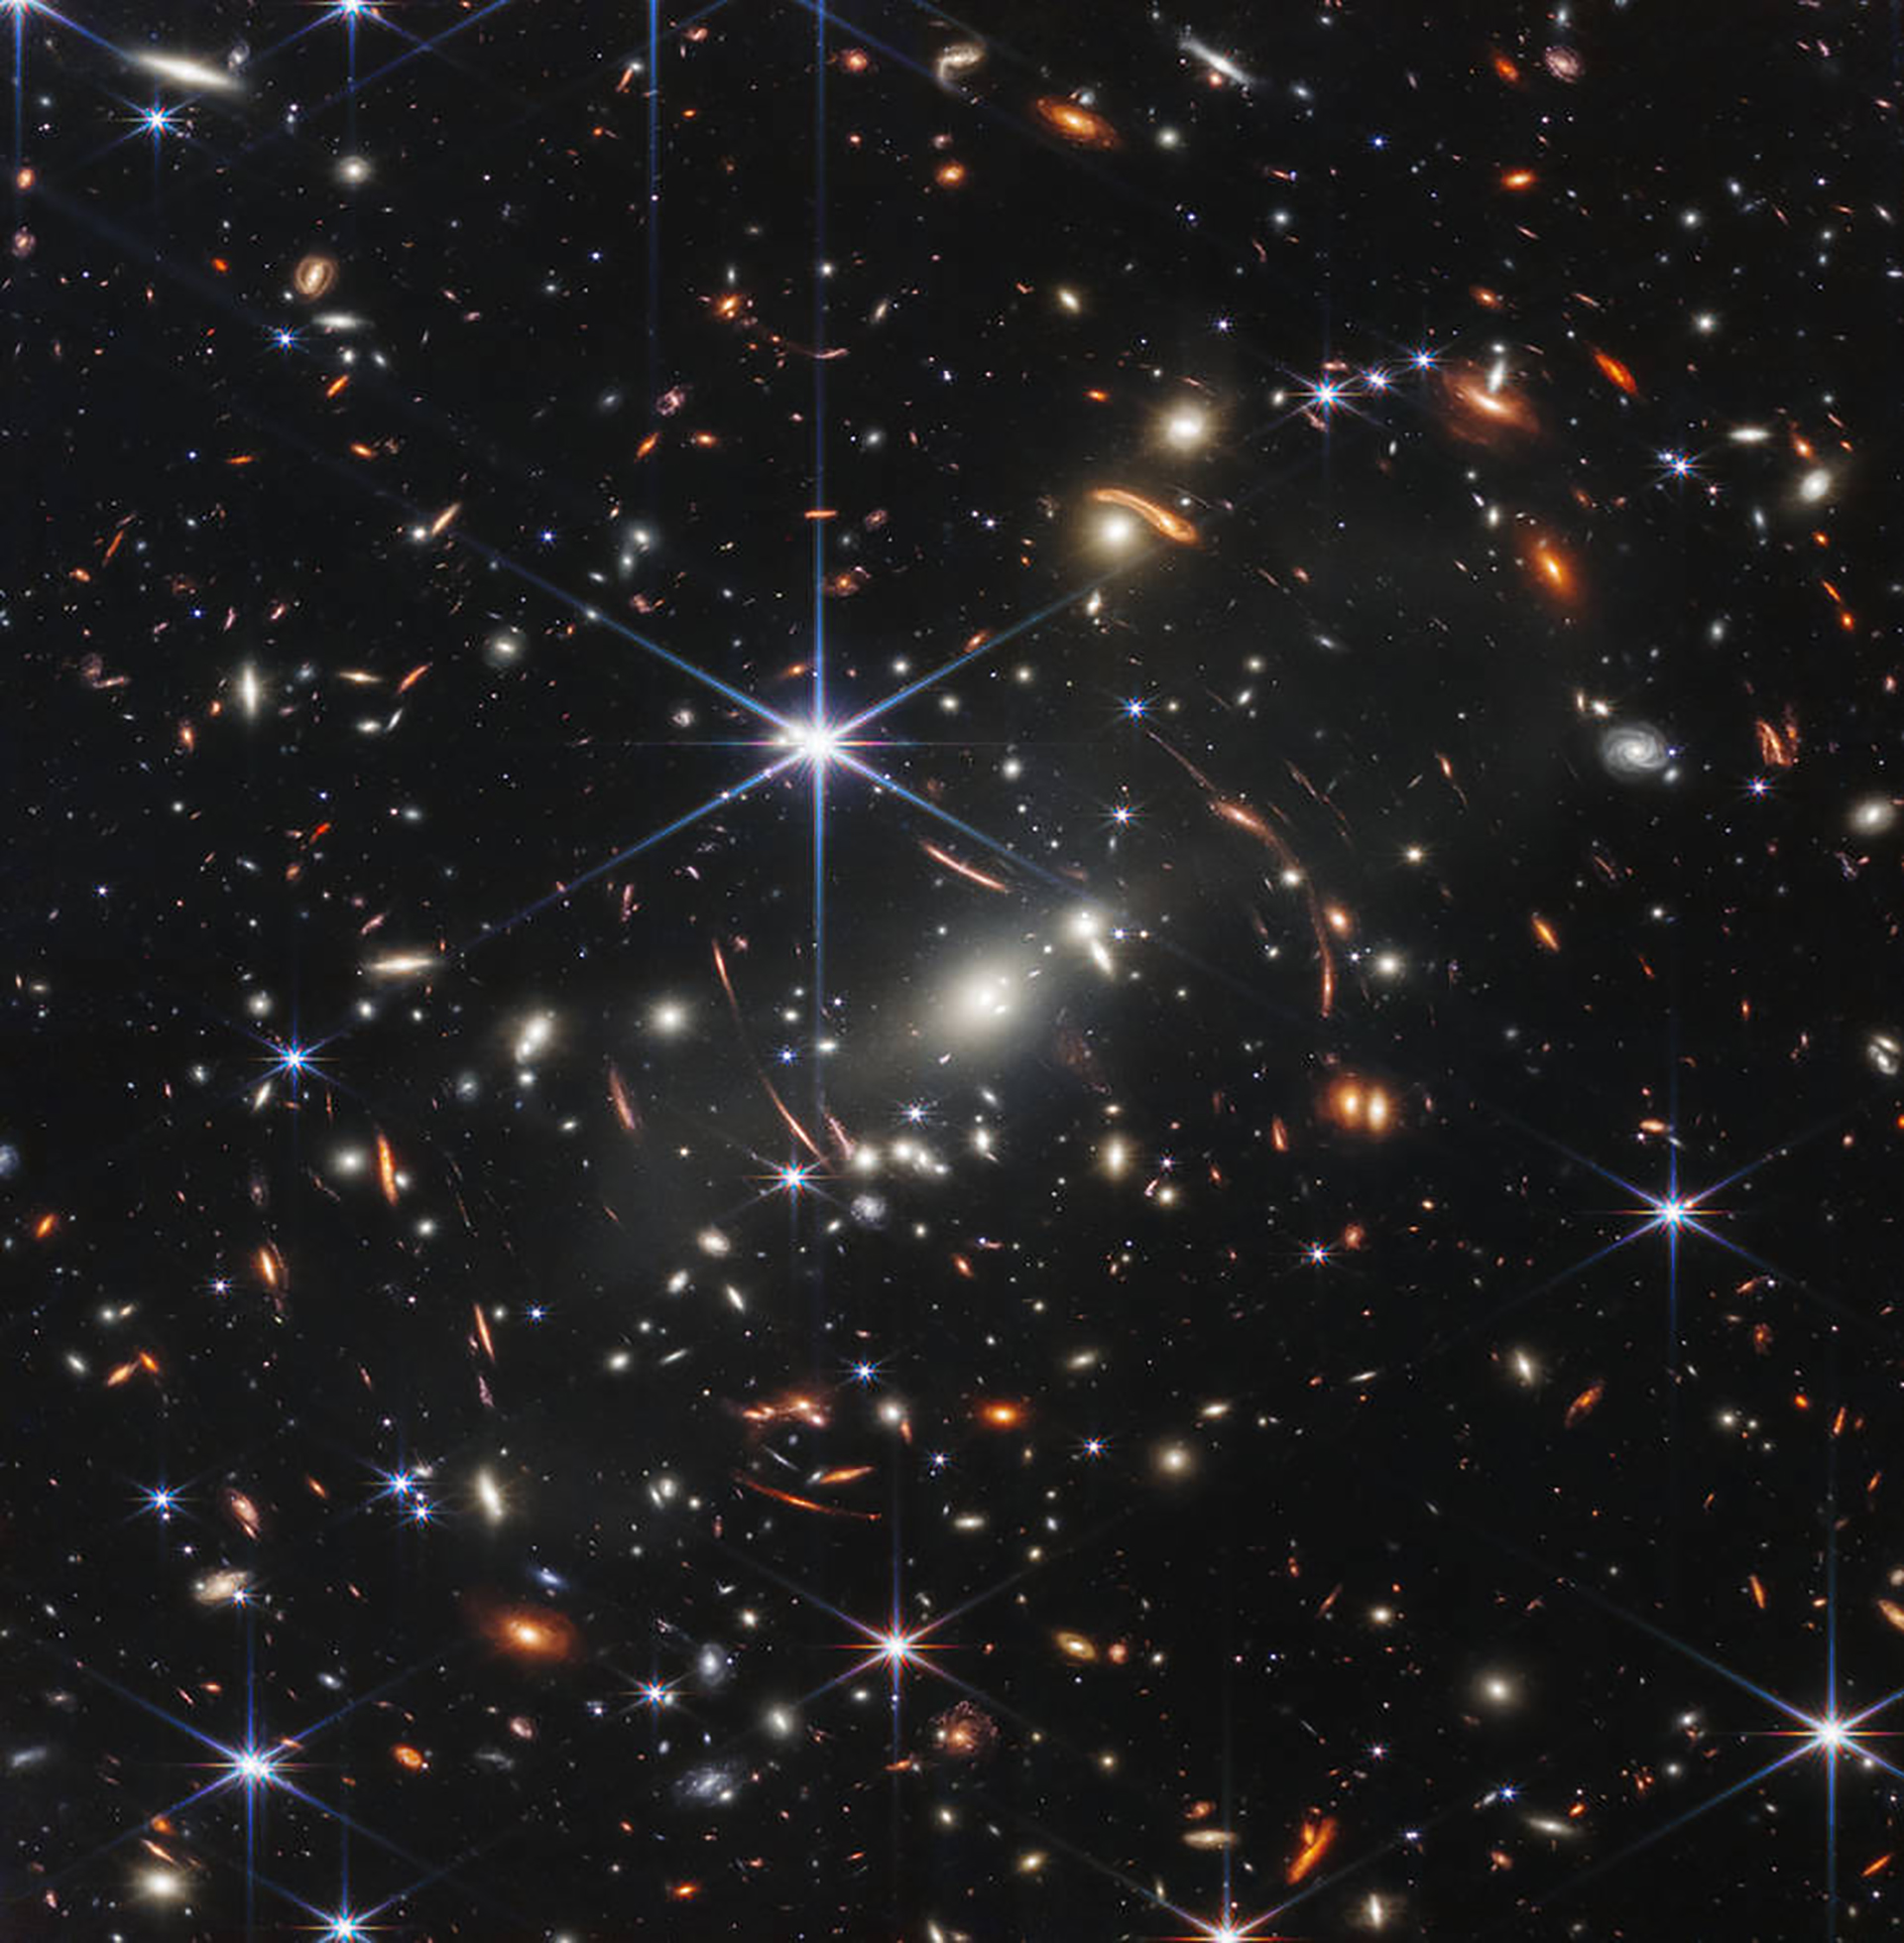 El telescopio James Webb utilizado en esta investigación ya había revelado anteriormente fotos impactantes de las galaxias más antiguas (NASA)